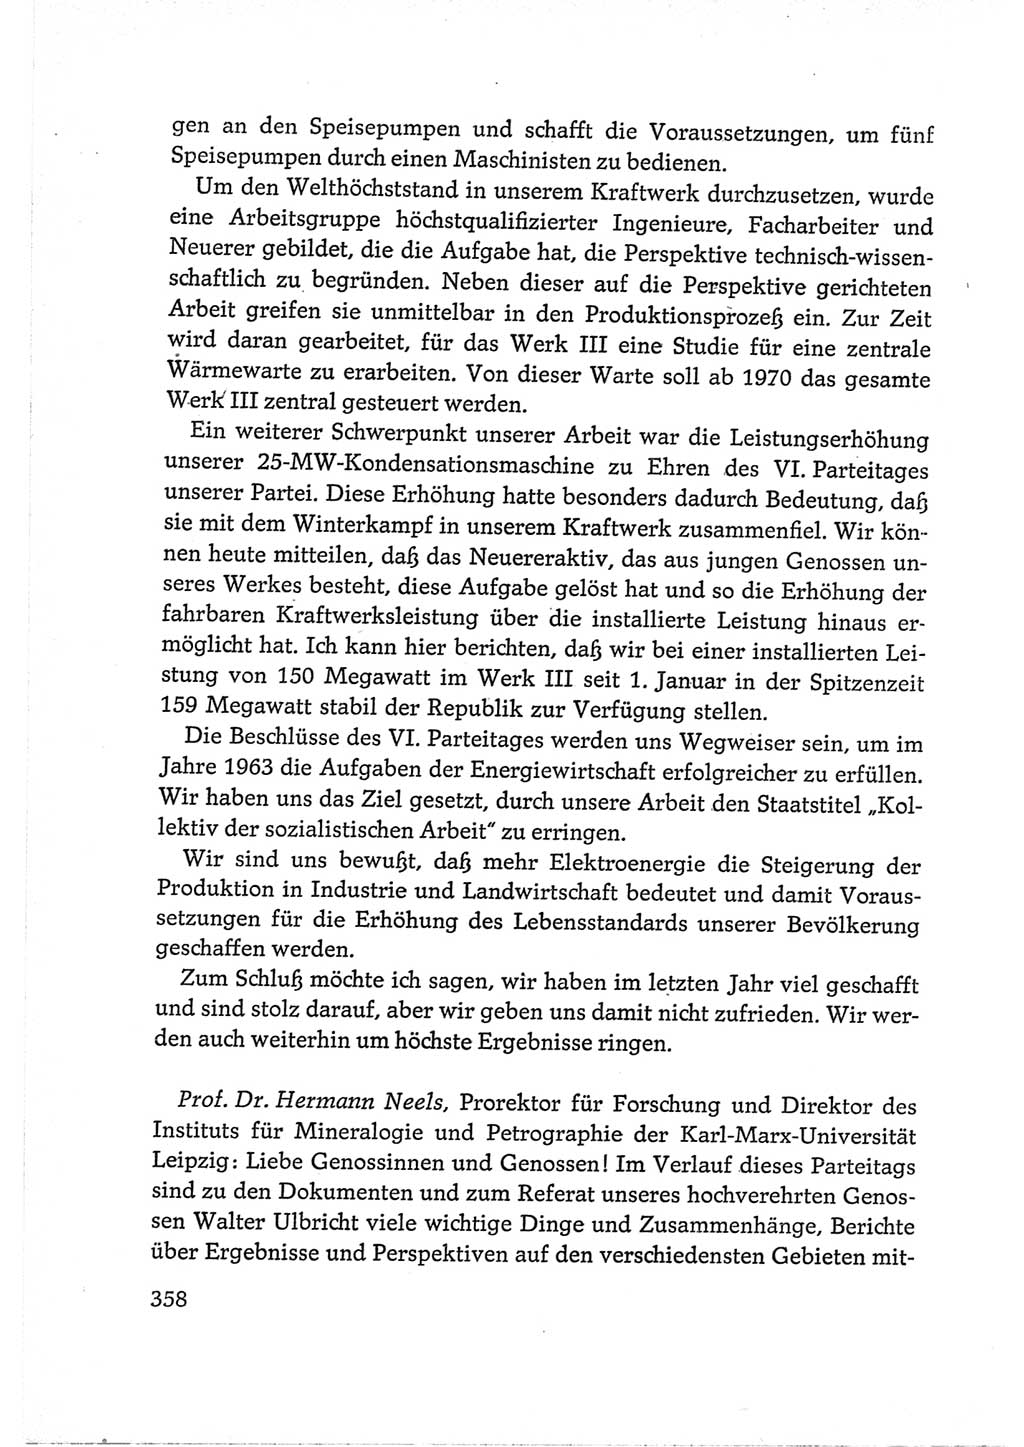 Protokoll der Verhandlungen des Ⅵ. Parteitages der Sozialistischen Einheitspartei Deutschlands (SED) [Deutsche Demokratische Republik (DDR)] 1963, Band Ⅲ, Seite 358 (Prot. Verh. Ⅵ. PT SED DDR 1963, Bd. Ⅲ, S. 358)